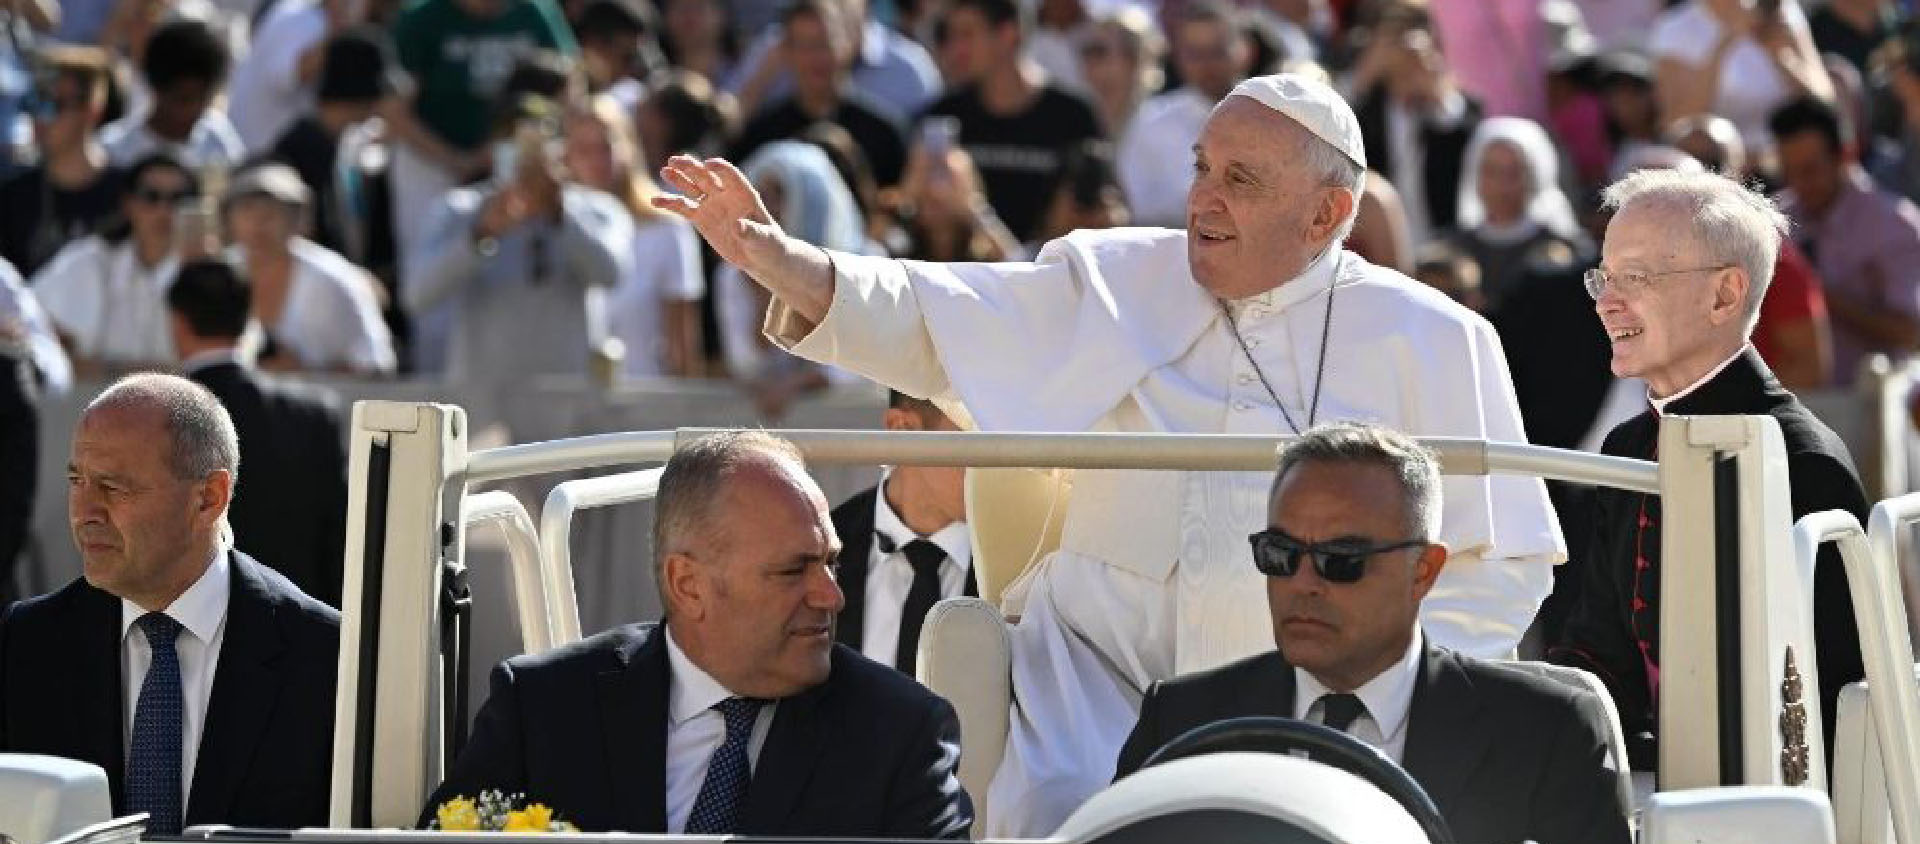 Le discernement «n’est pas une sorte d’oracle ou de fatalisme», a souligné le pape durant l'audience | © Vatican News